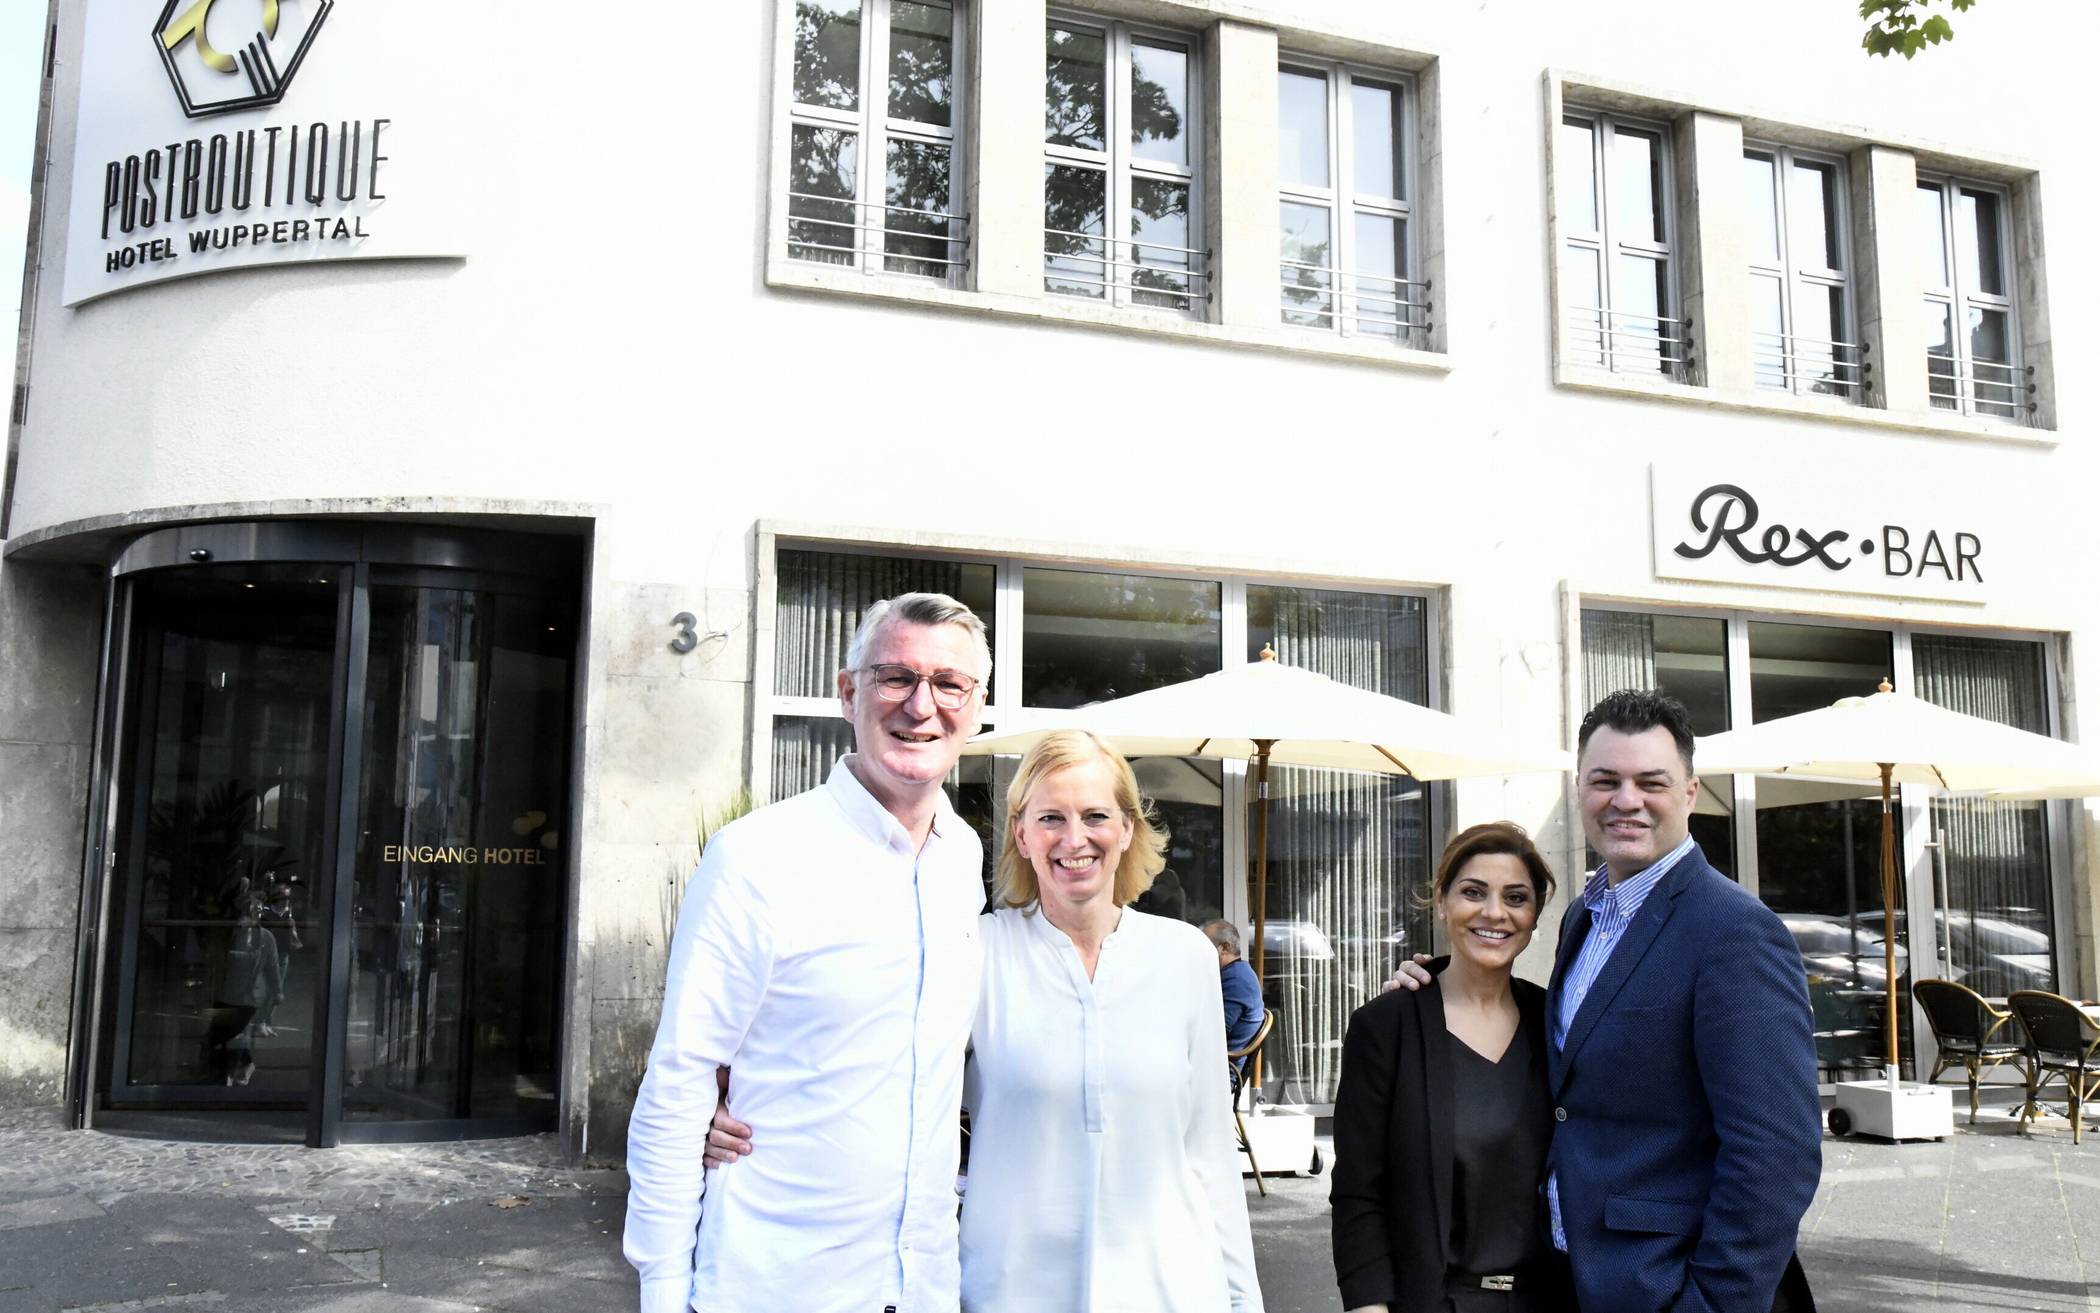  Anke Hartmann und Arnt Vesper mit Cangül und Serkan Akgün – zusammen sind sie die Köpfe hinter dem „Postboutique Hotel“ und der Rex Bar“ am Kirchplatz mitten in Elberfeld.  